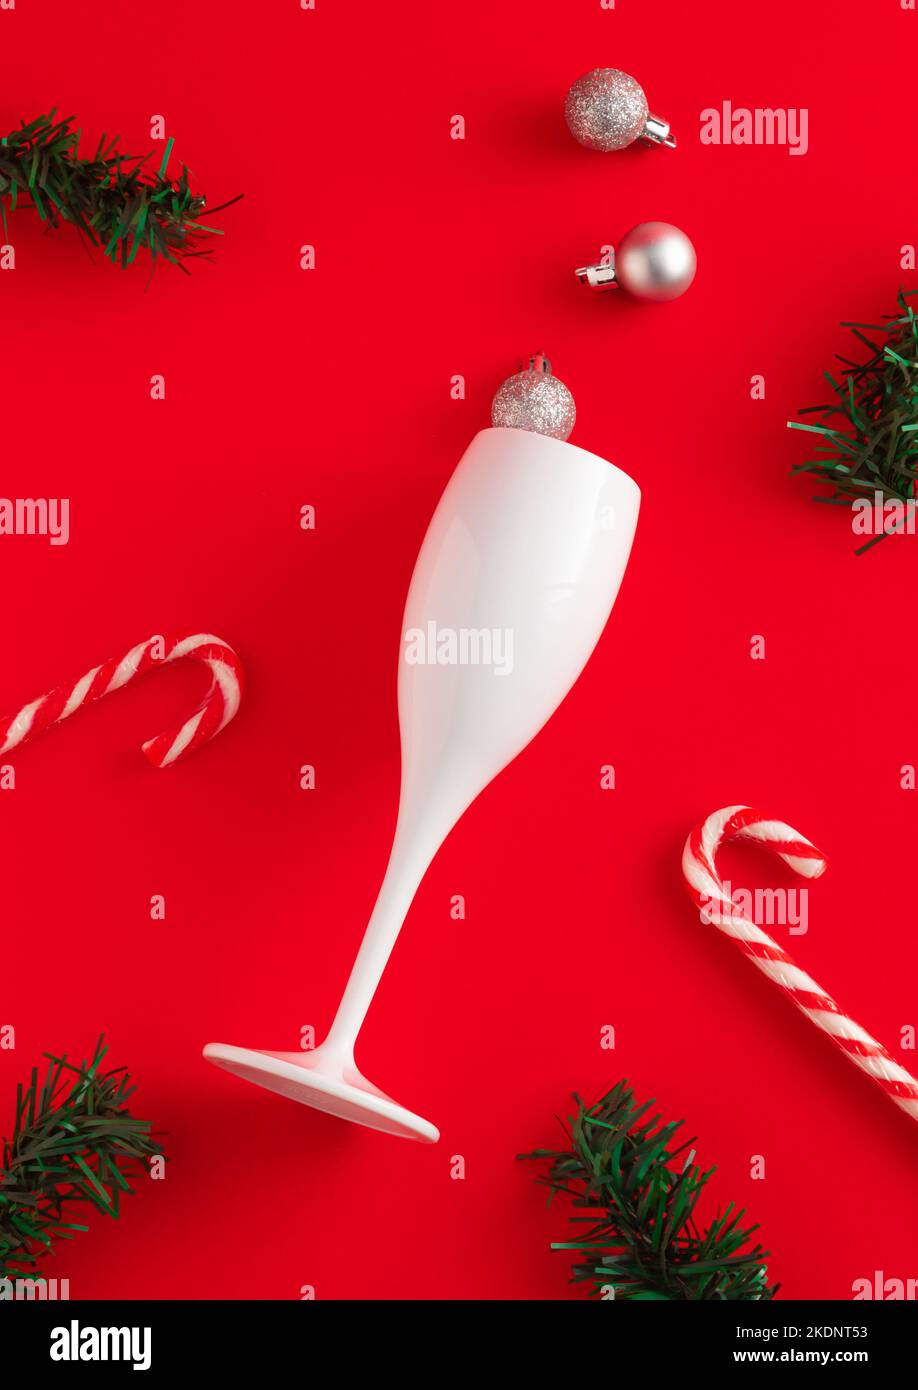 Nouveau concept de l'année en verre à vin, bonbons, branches de sapin et boules de Noël sur fond rouge. Idée de fête minimale. Flat lay, vue de dessus. Banque D'Images